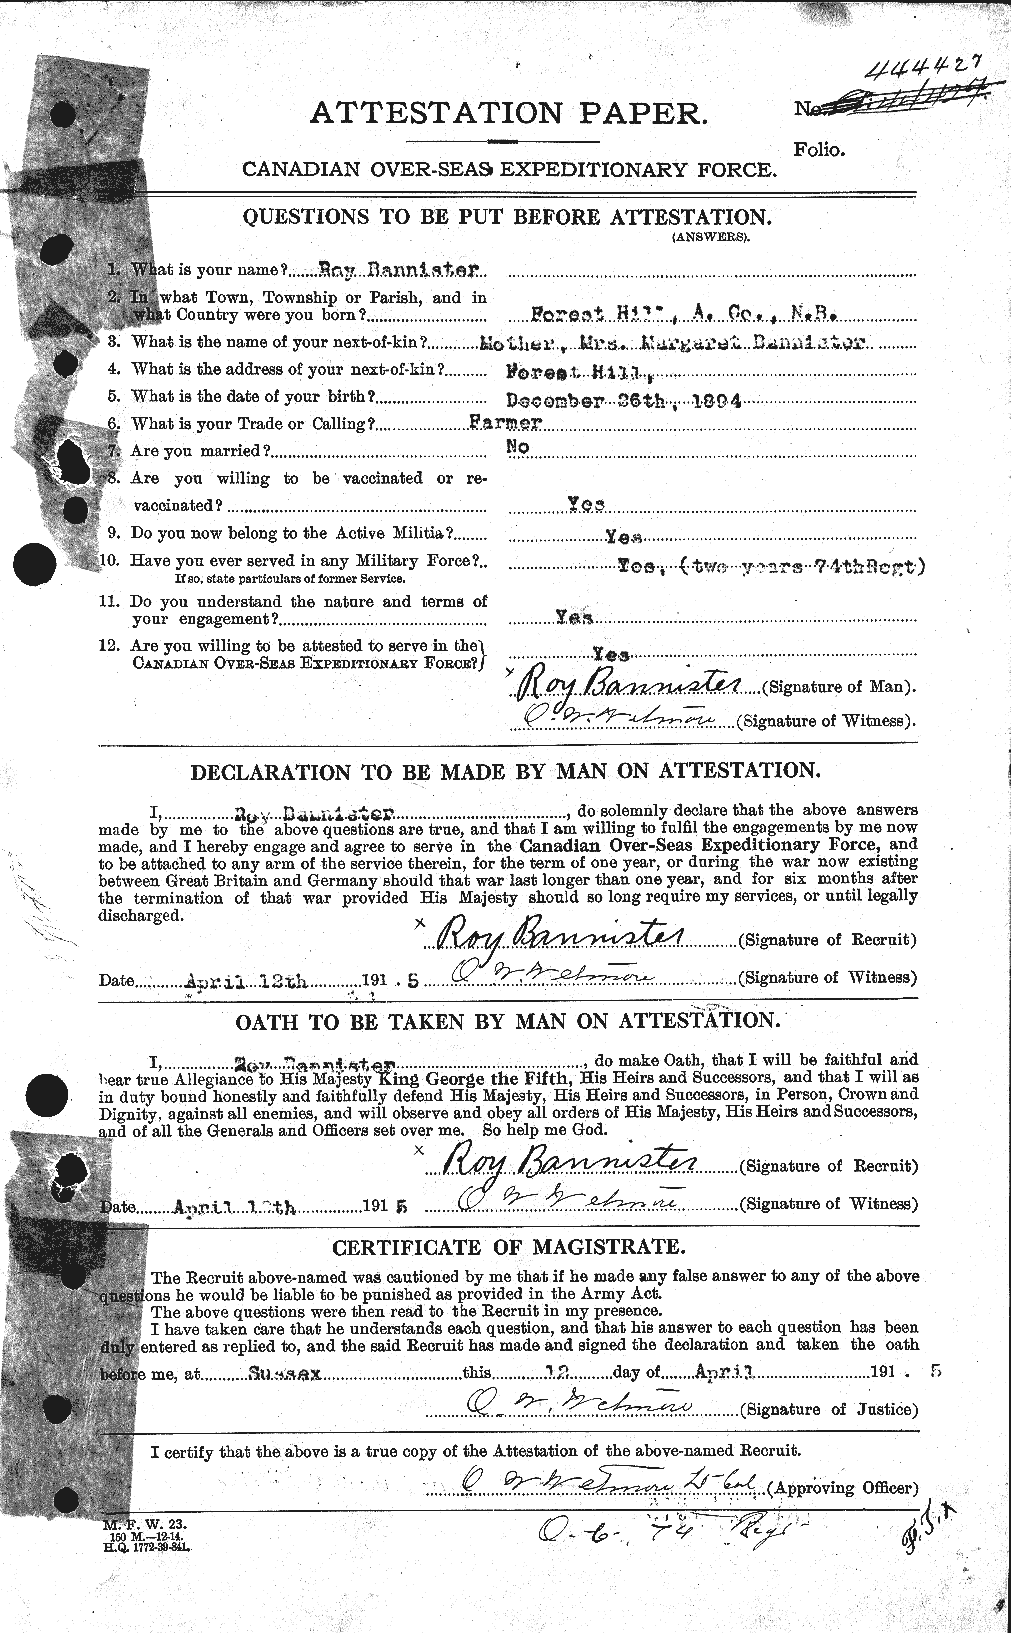 Dossiers du Personnel de la Première Guerre mondiale - CEC 224767a